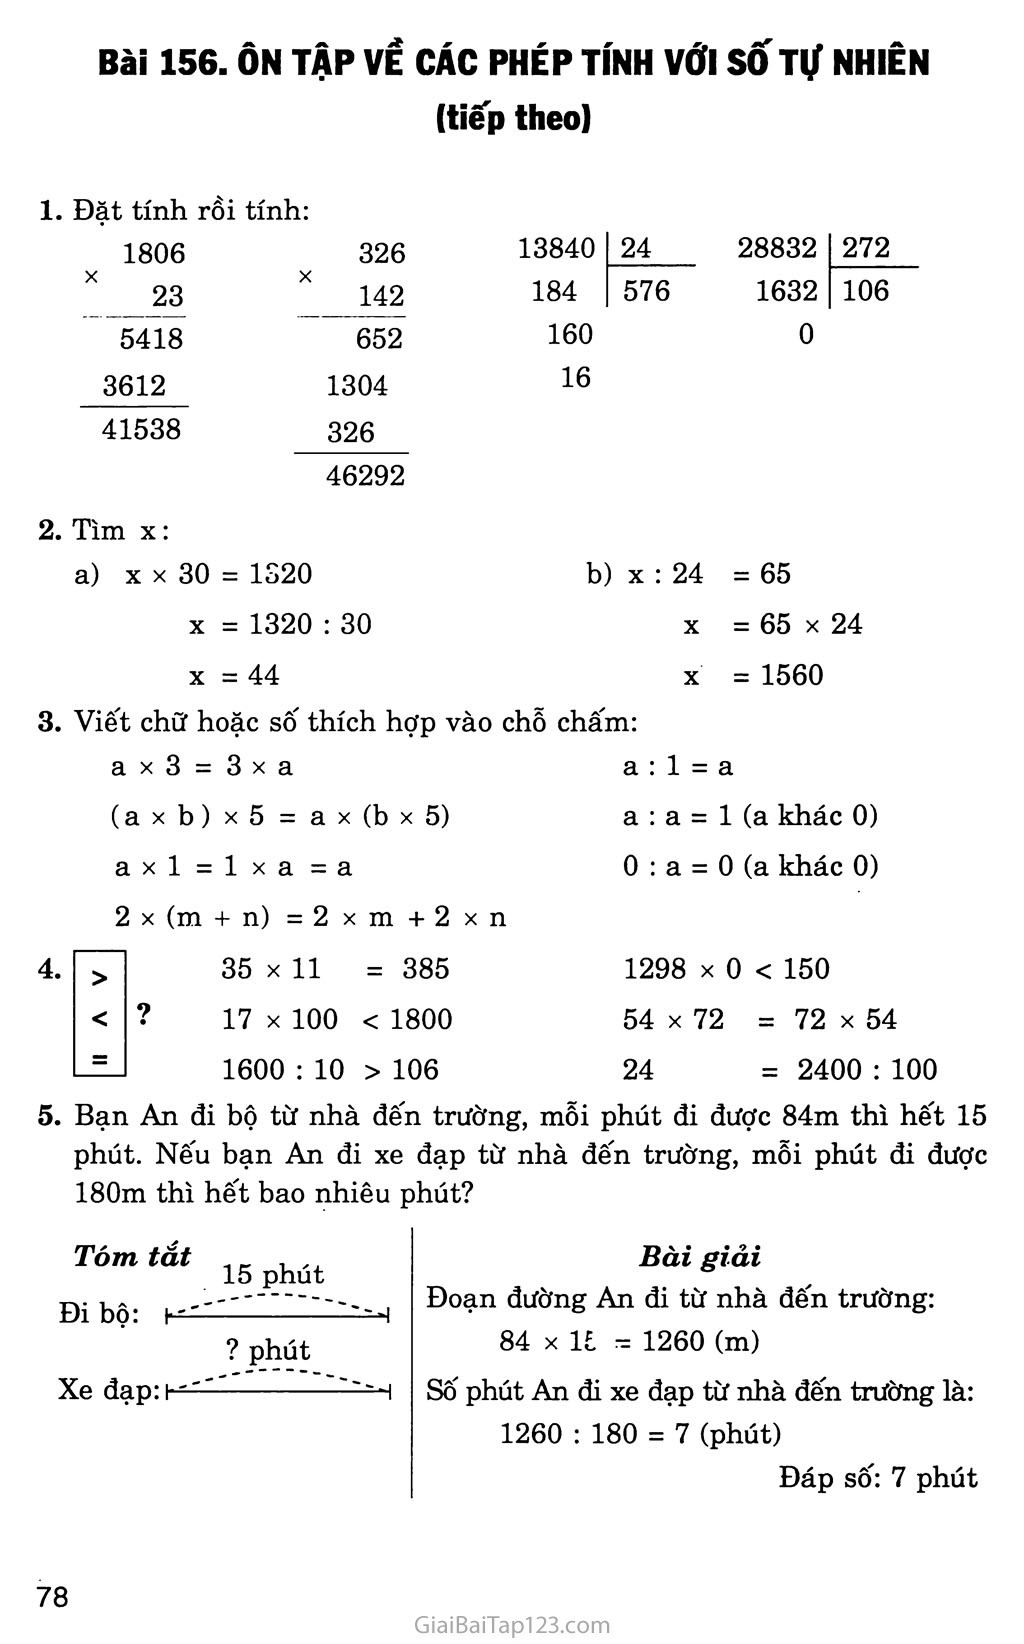 Bài 156: Ôn tập về các phép tính với số tự nhiên (tiếp theo) trang 1